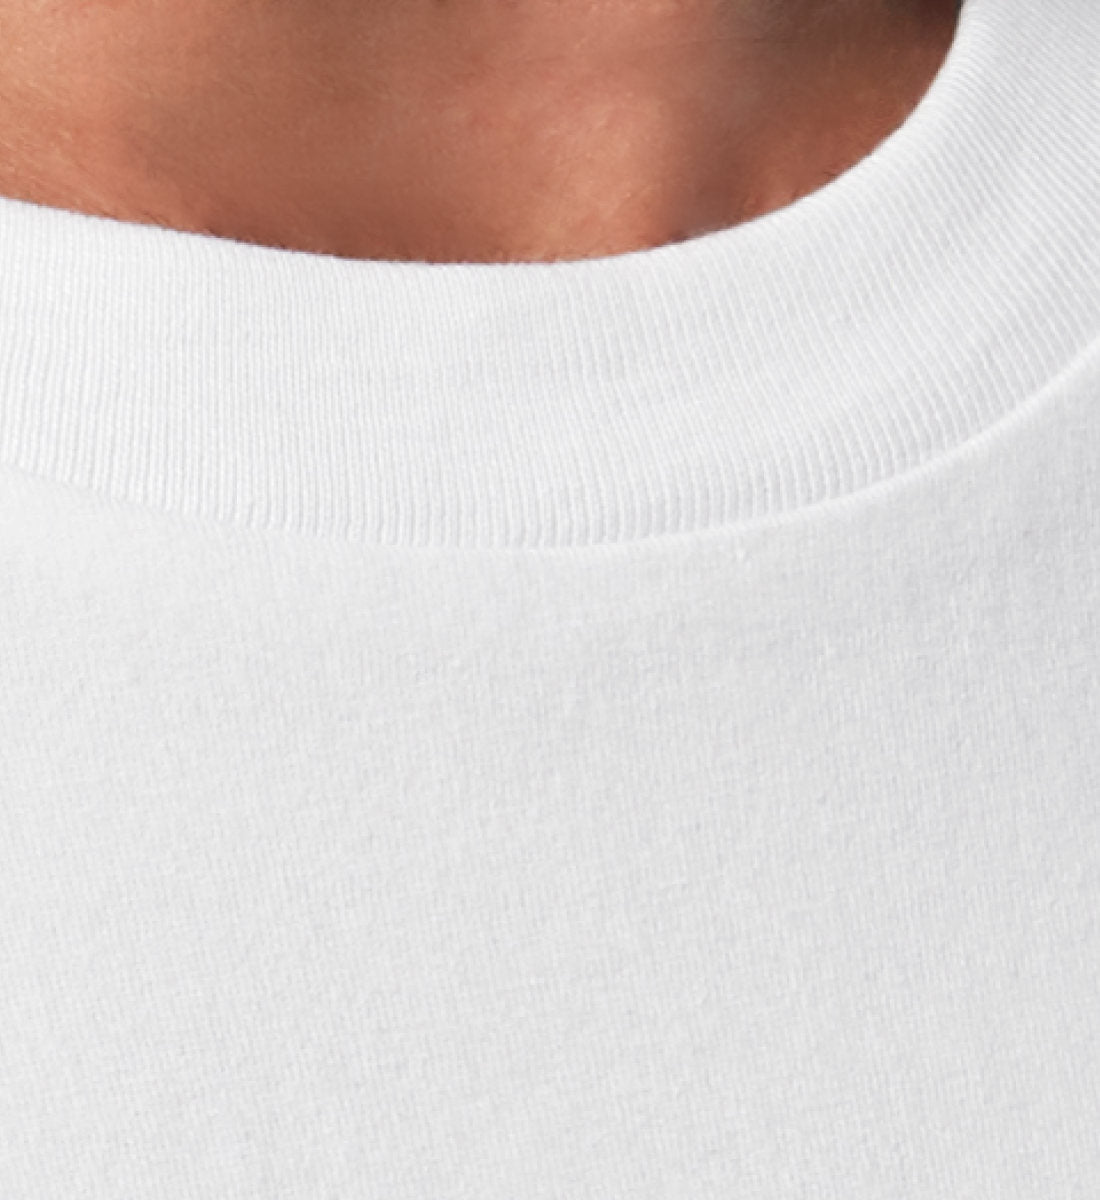 Weißes Kinder T-Shirt für Mädchen und Jungen bedruckt mit dem Design der Roger Rockawoo Kollektion shredding culture kids surfing